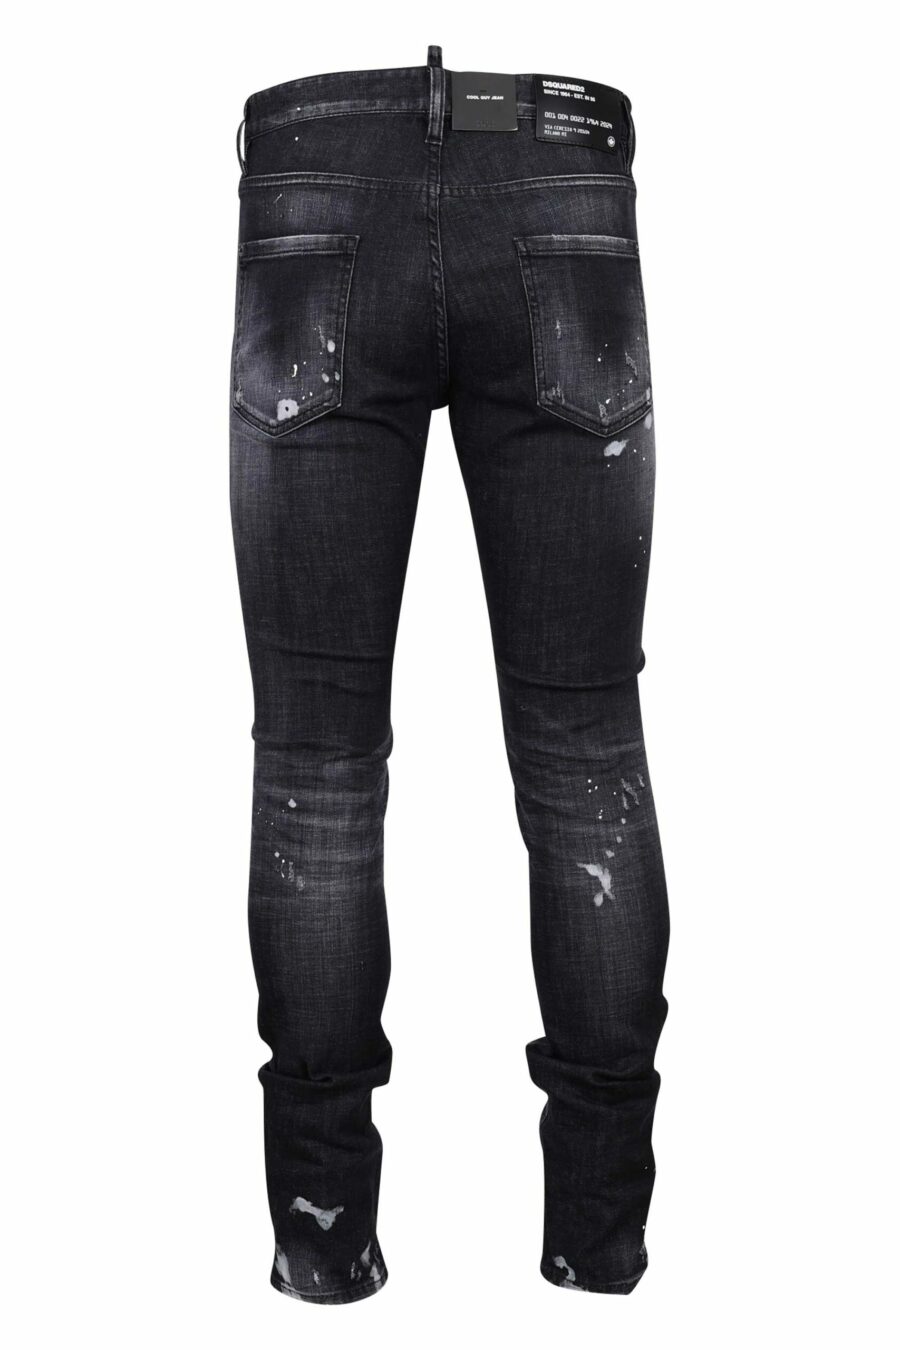 Calças de ganga pretas "cool guy jean" com rasgões e desgastadas - 8054148300753 2 scaled